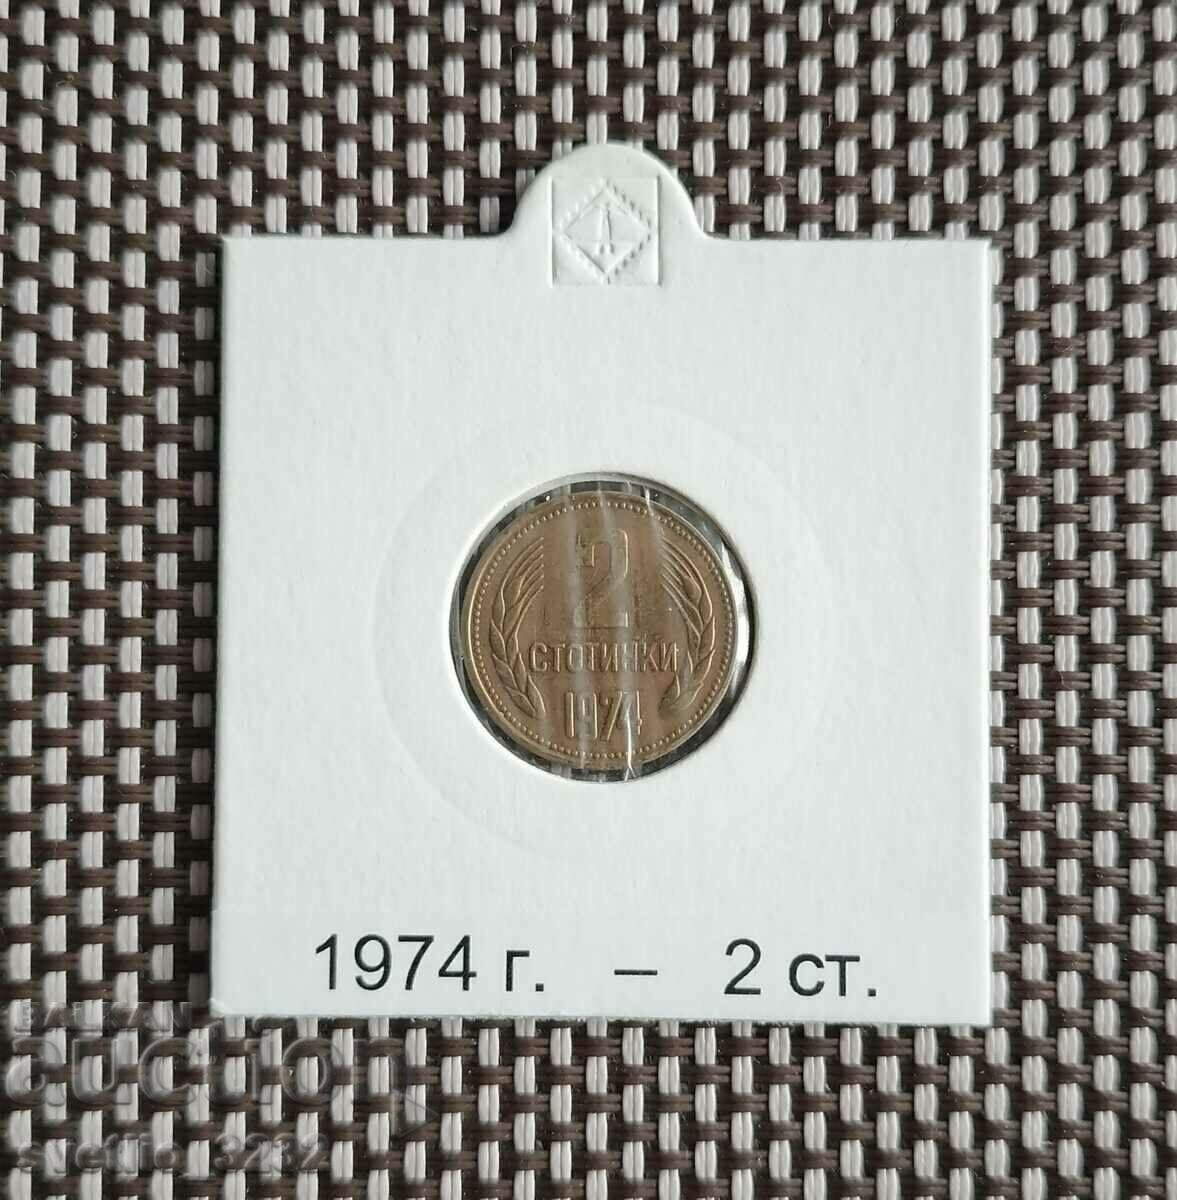 2 σεντς 1974